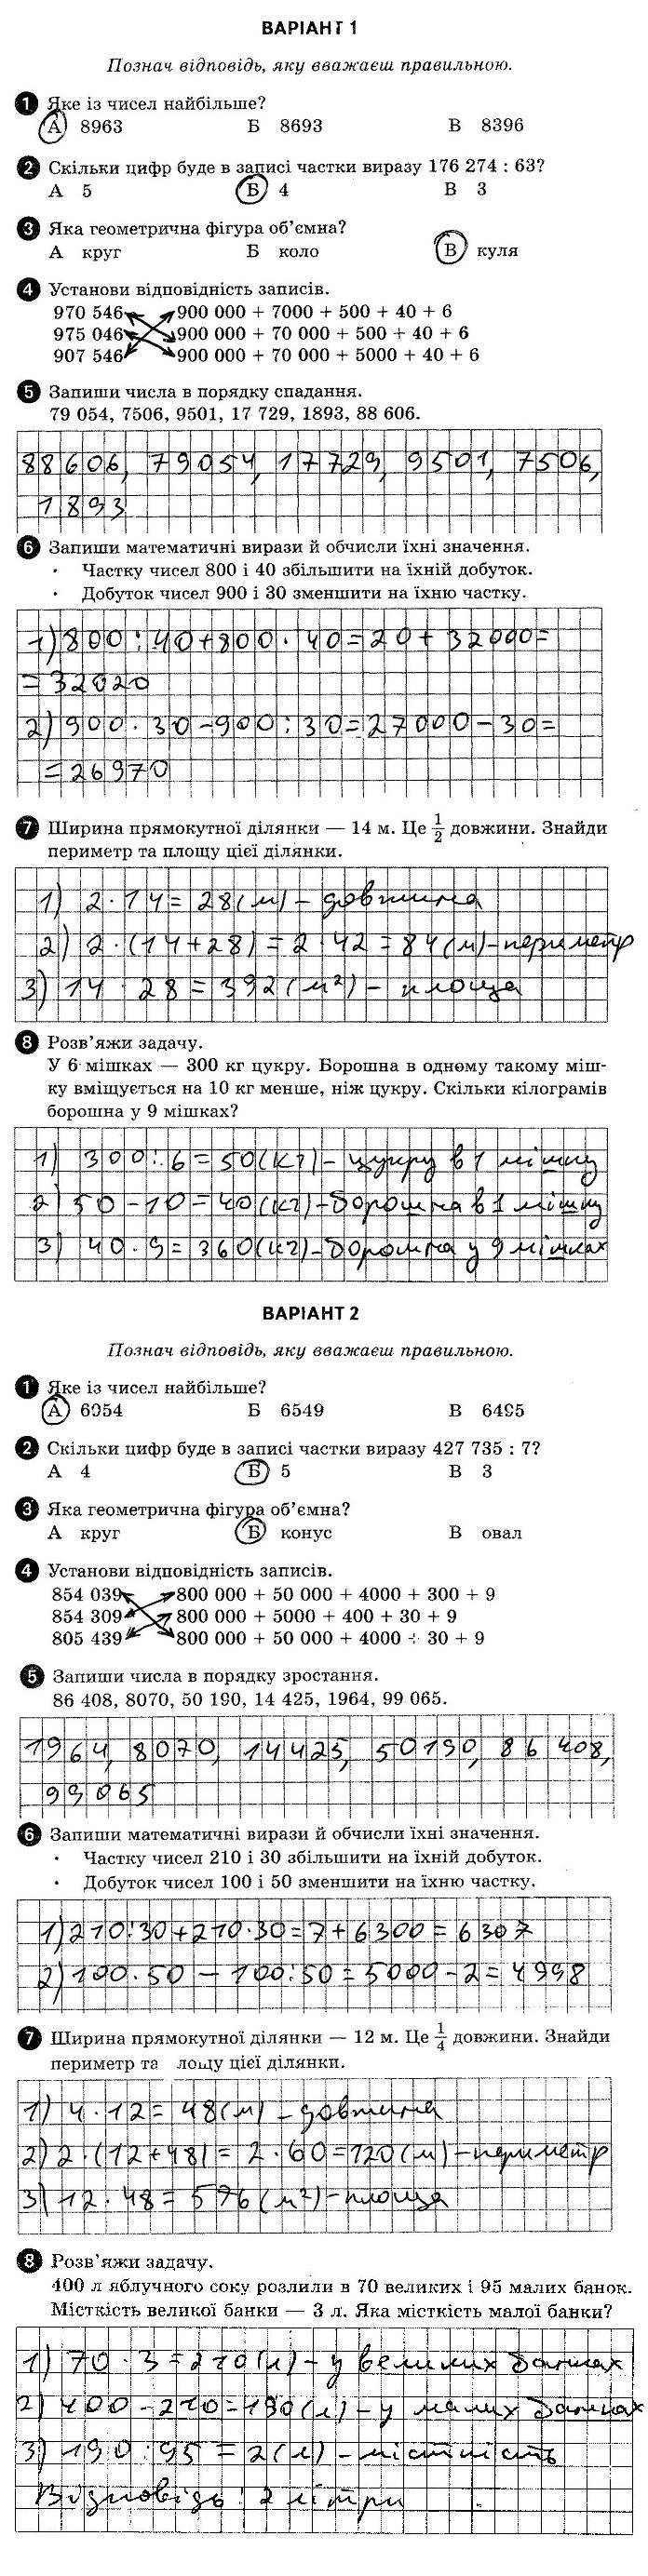 ГДЗ (відповіді) Тестова контрольна робота 6 4 клас ДПА-2020 Математика Шевченко (підсумкові контрольні роботи)